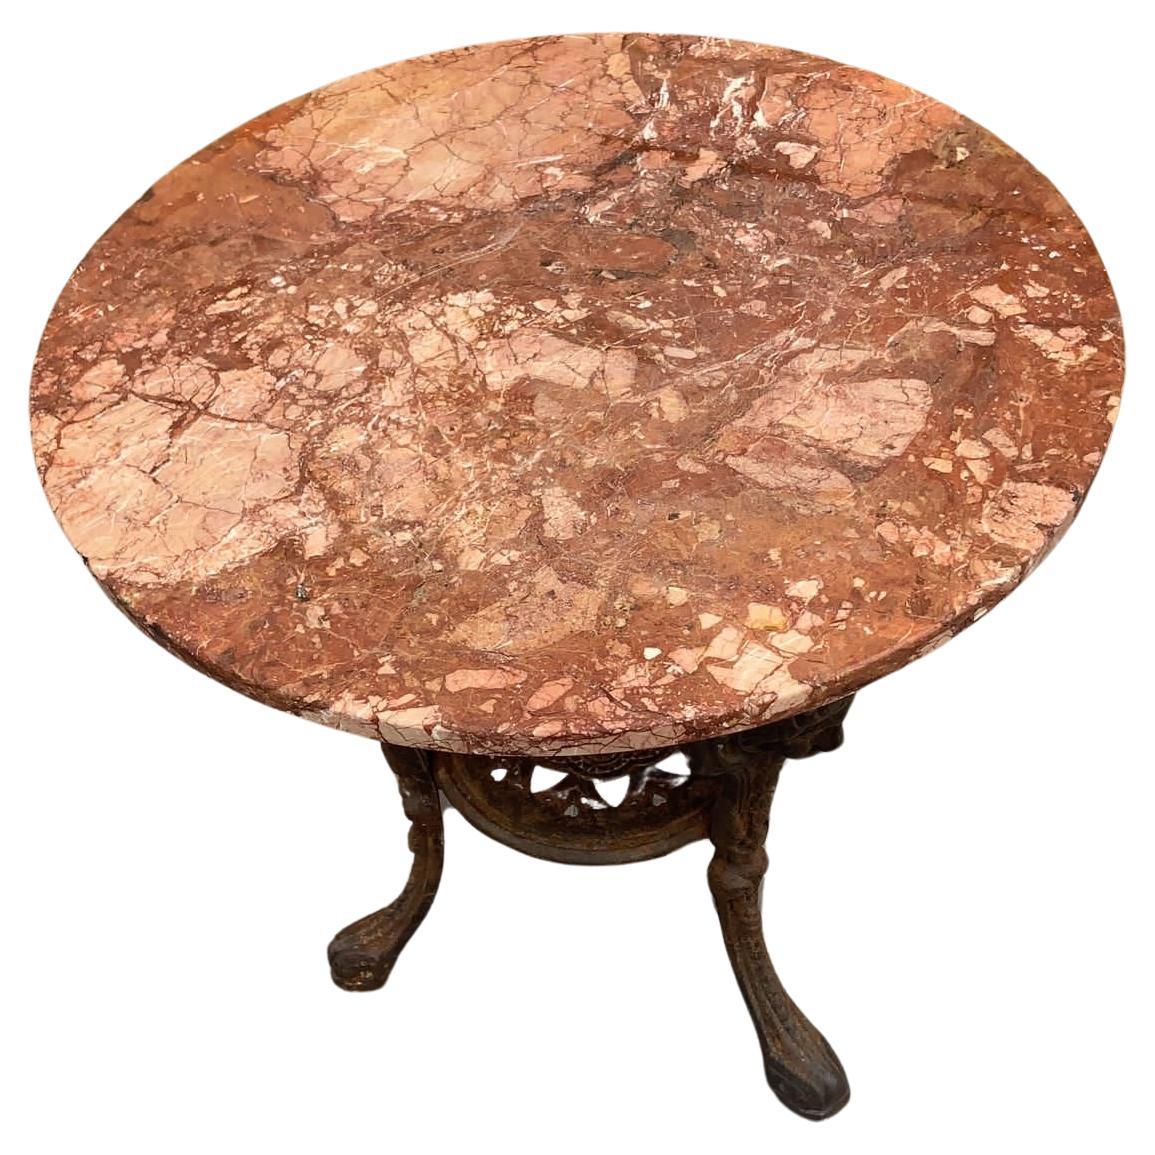 Antiker englischer neoklassizistischer Pub-Tisch aus Gusseisen mit Marmorplatte

Fantastische frühen 1900's neoklassischen verzierten figuralen Gusseisen Basis mit runden italienischen Marmorplatte Pub Tisch. Dieser englische Tisch ist ein solider,